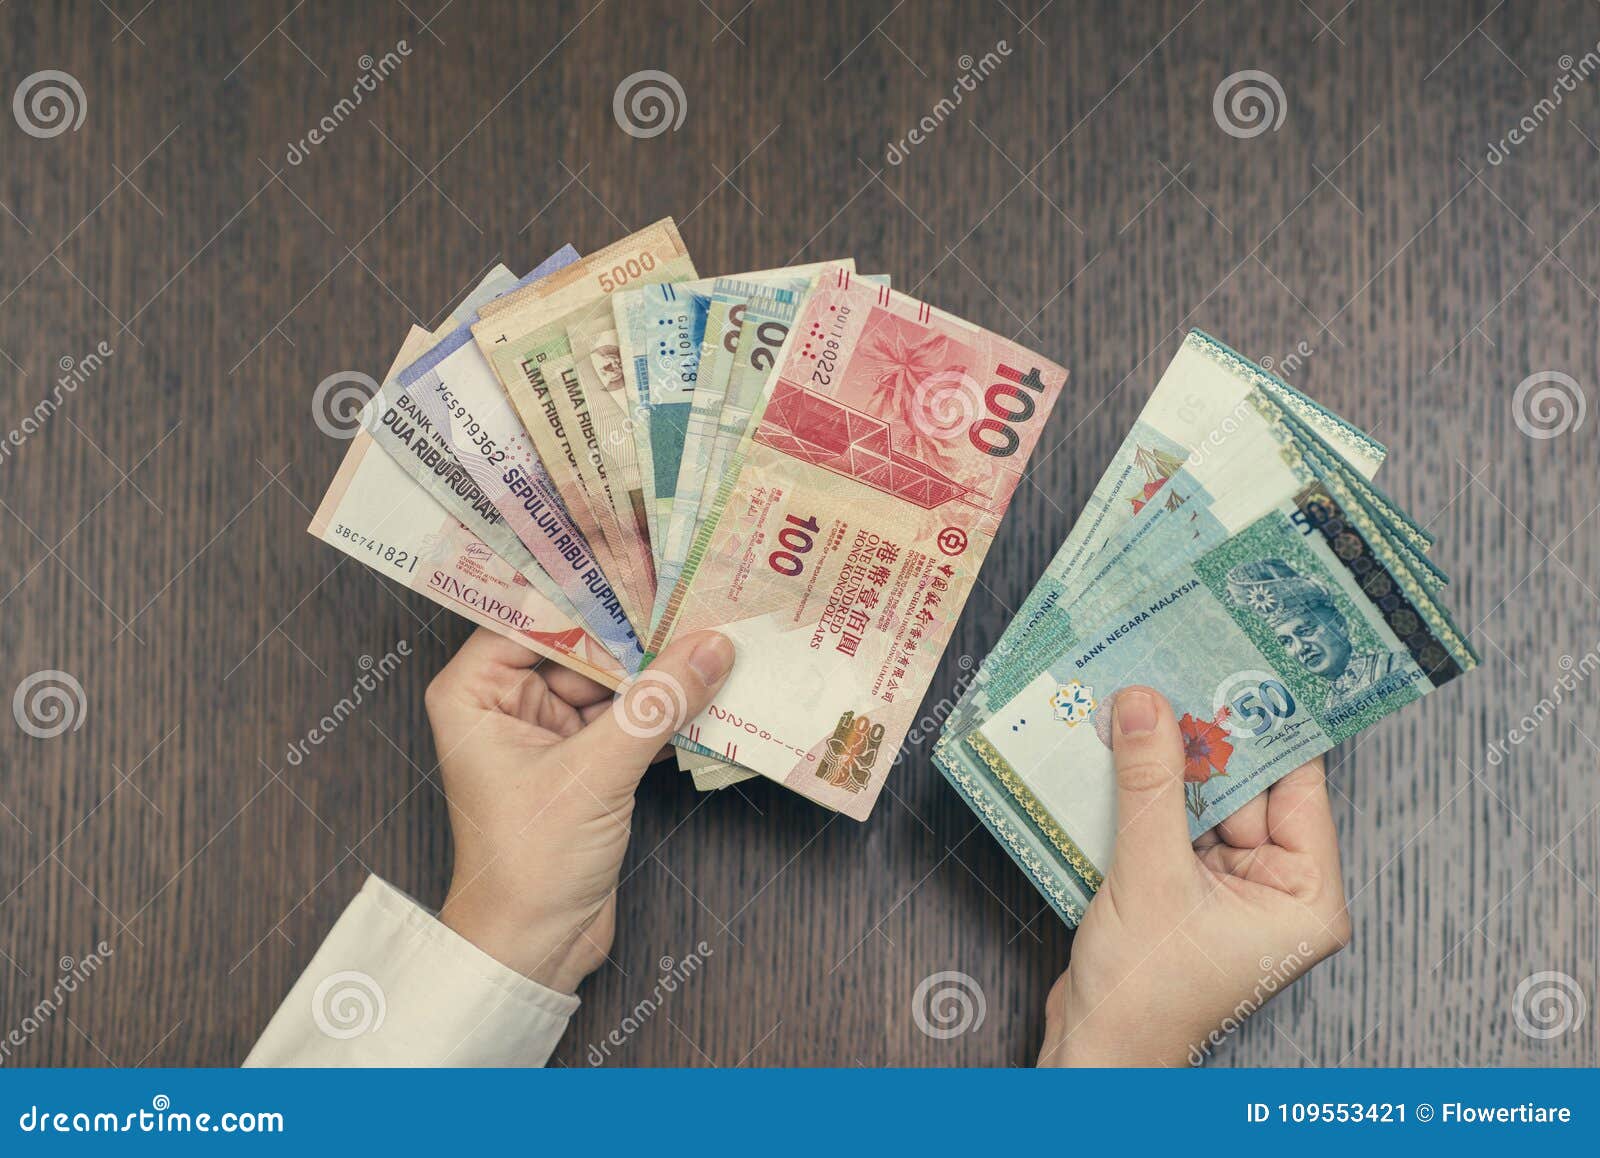 Myr 100 singapore dollar to 100 Singapore